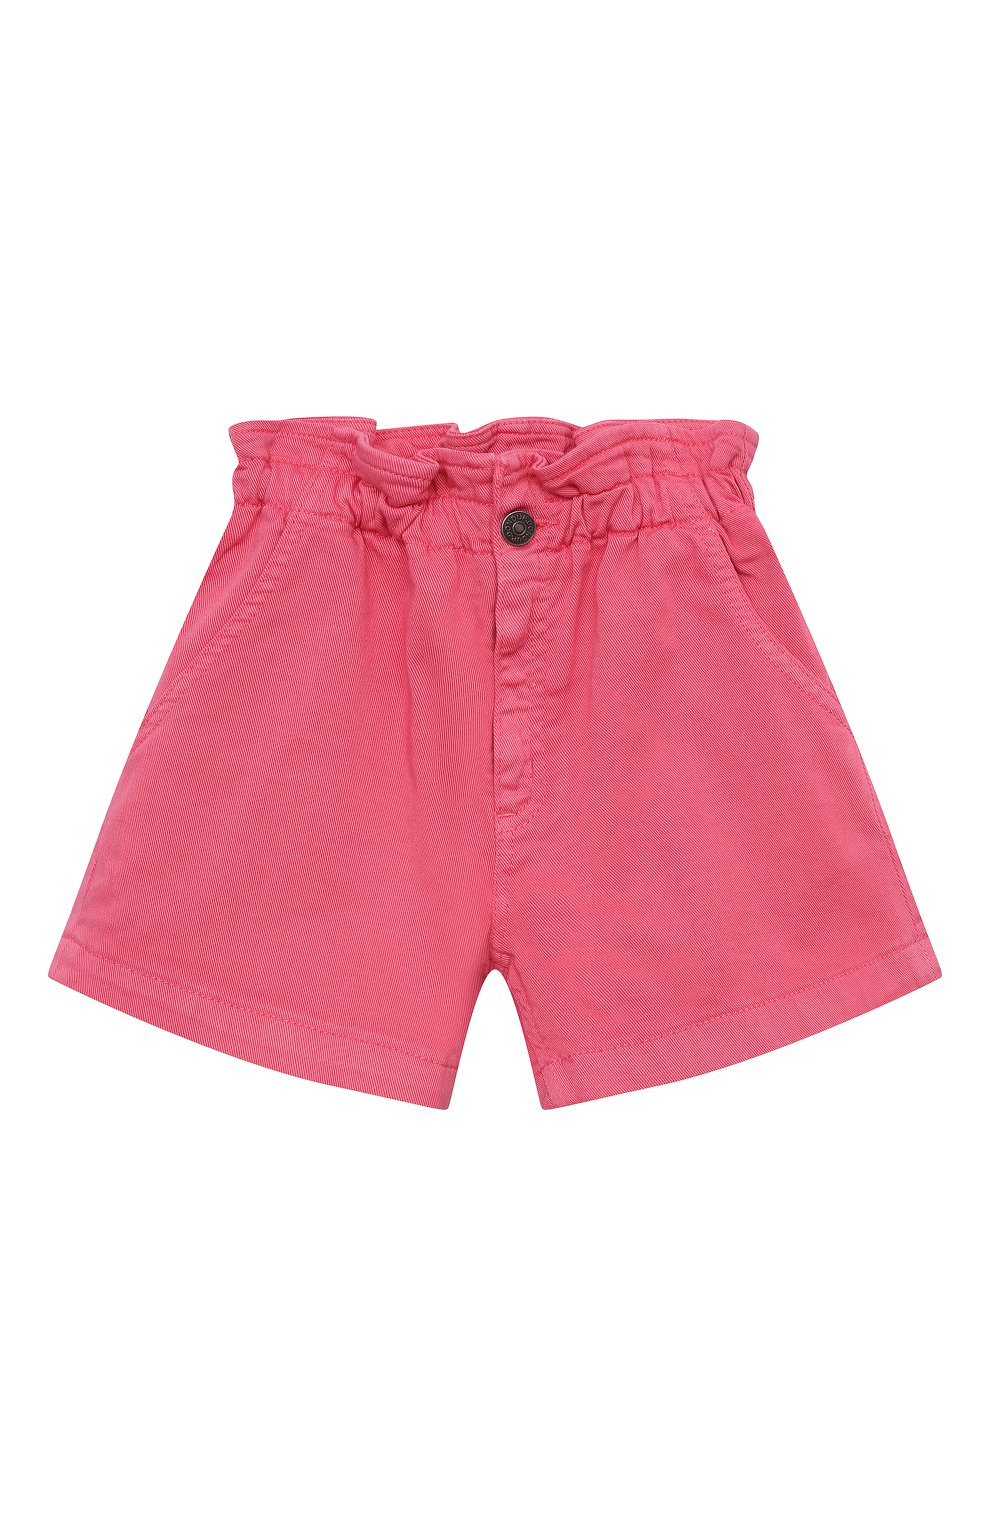 Джинсовые шорты DONDUP KIDS детские розового цвета — купить в интернет ...